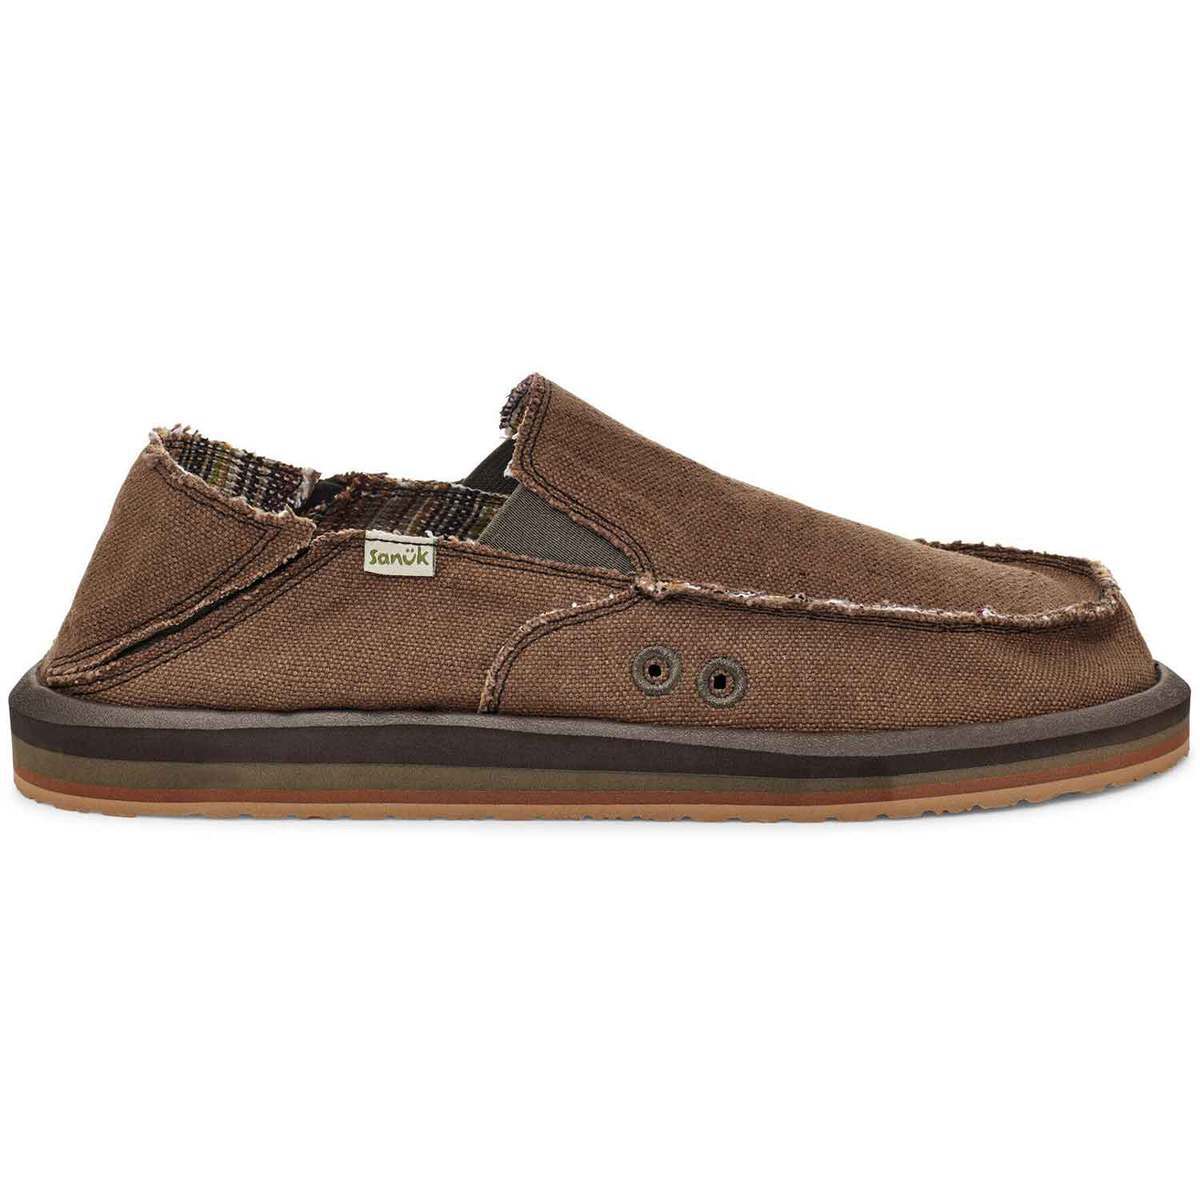 Sanuk Men's Vagabond ST Hemp Casual Shoes - Brown - Size 13 - Brown 13 ...